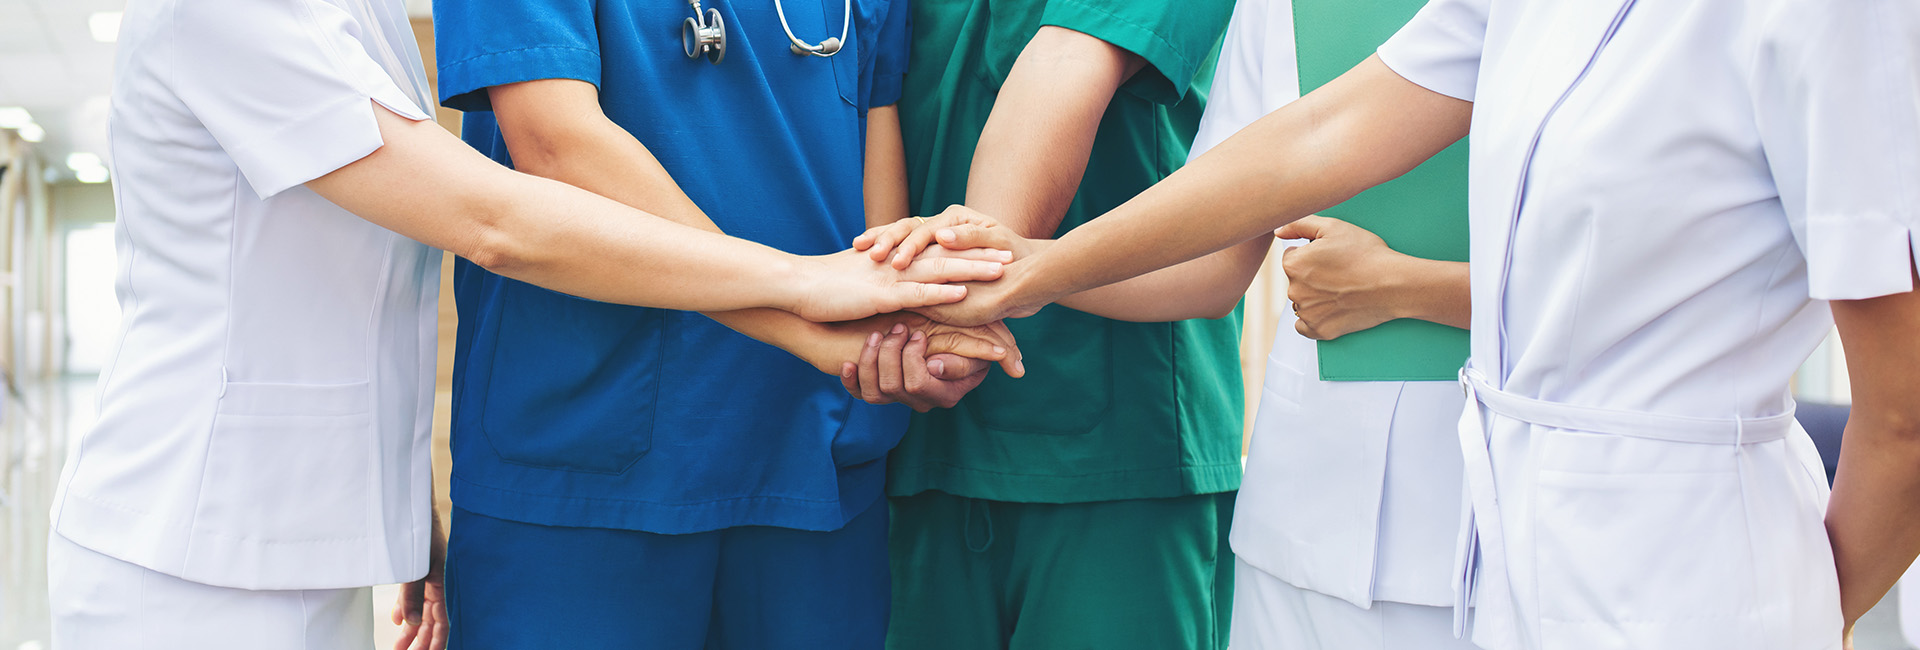 Team aus Ärztinnen:Ärzten und Pfleger:innen legen Hände übereinander